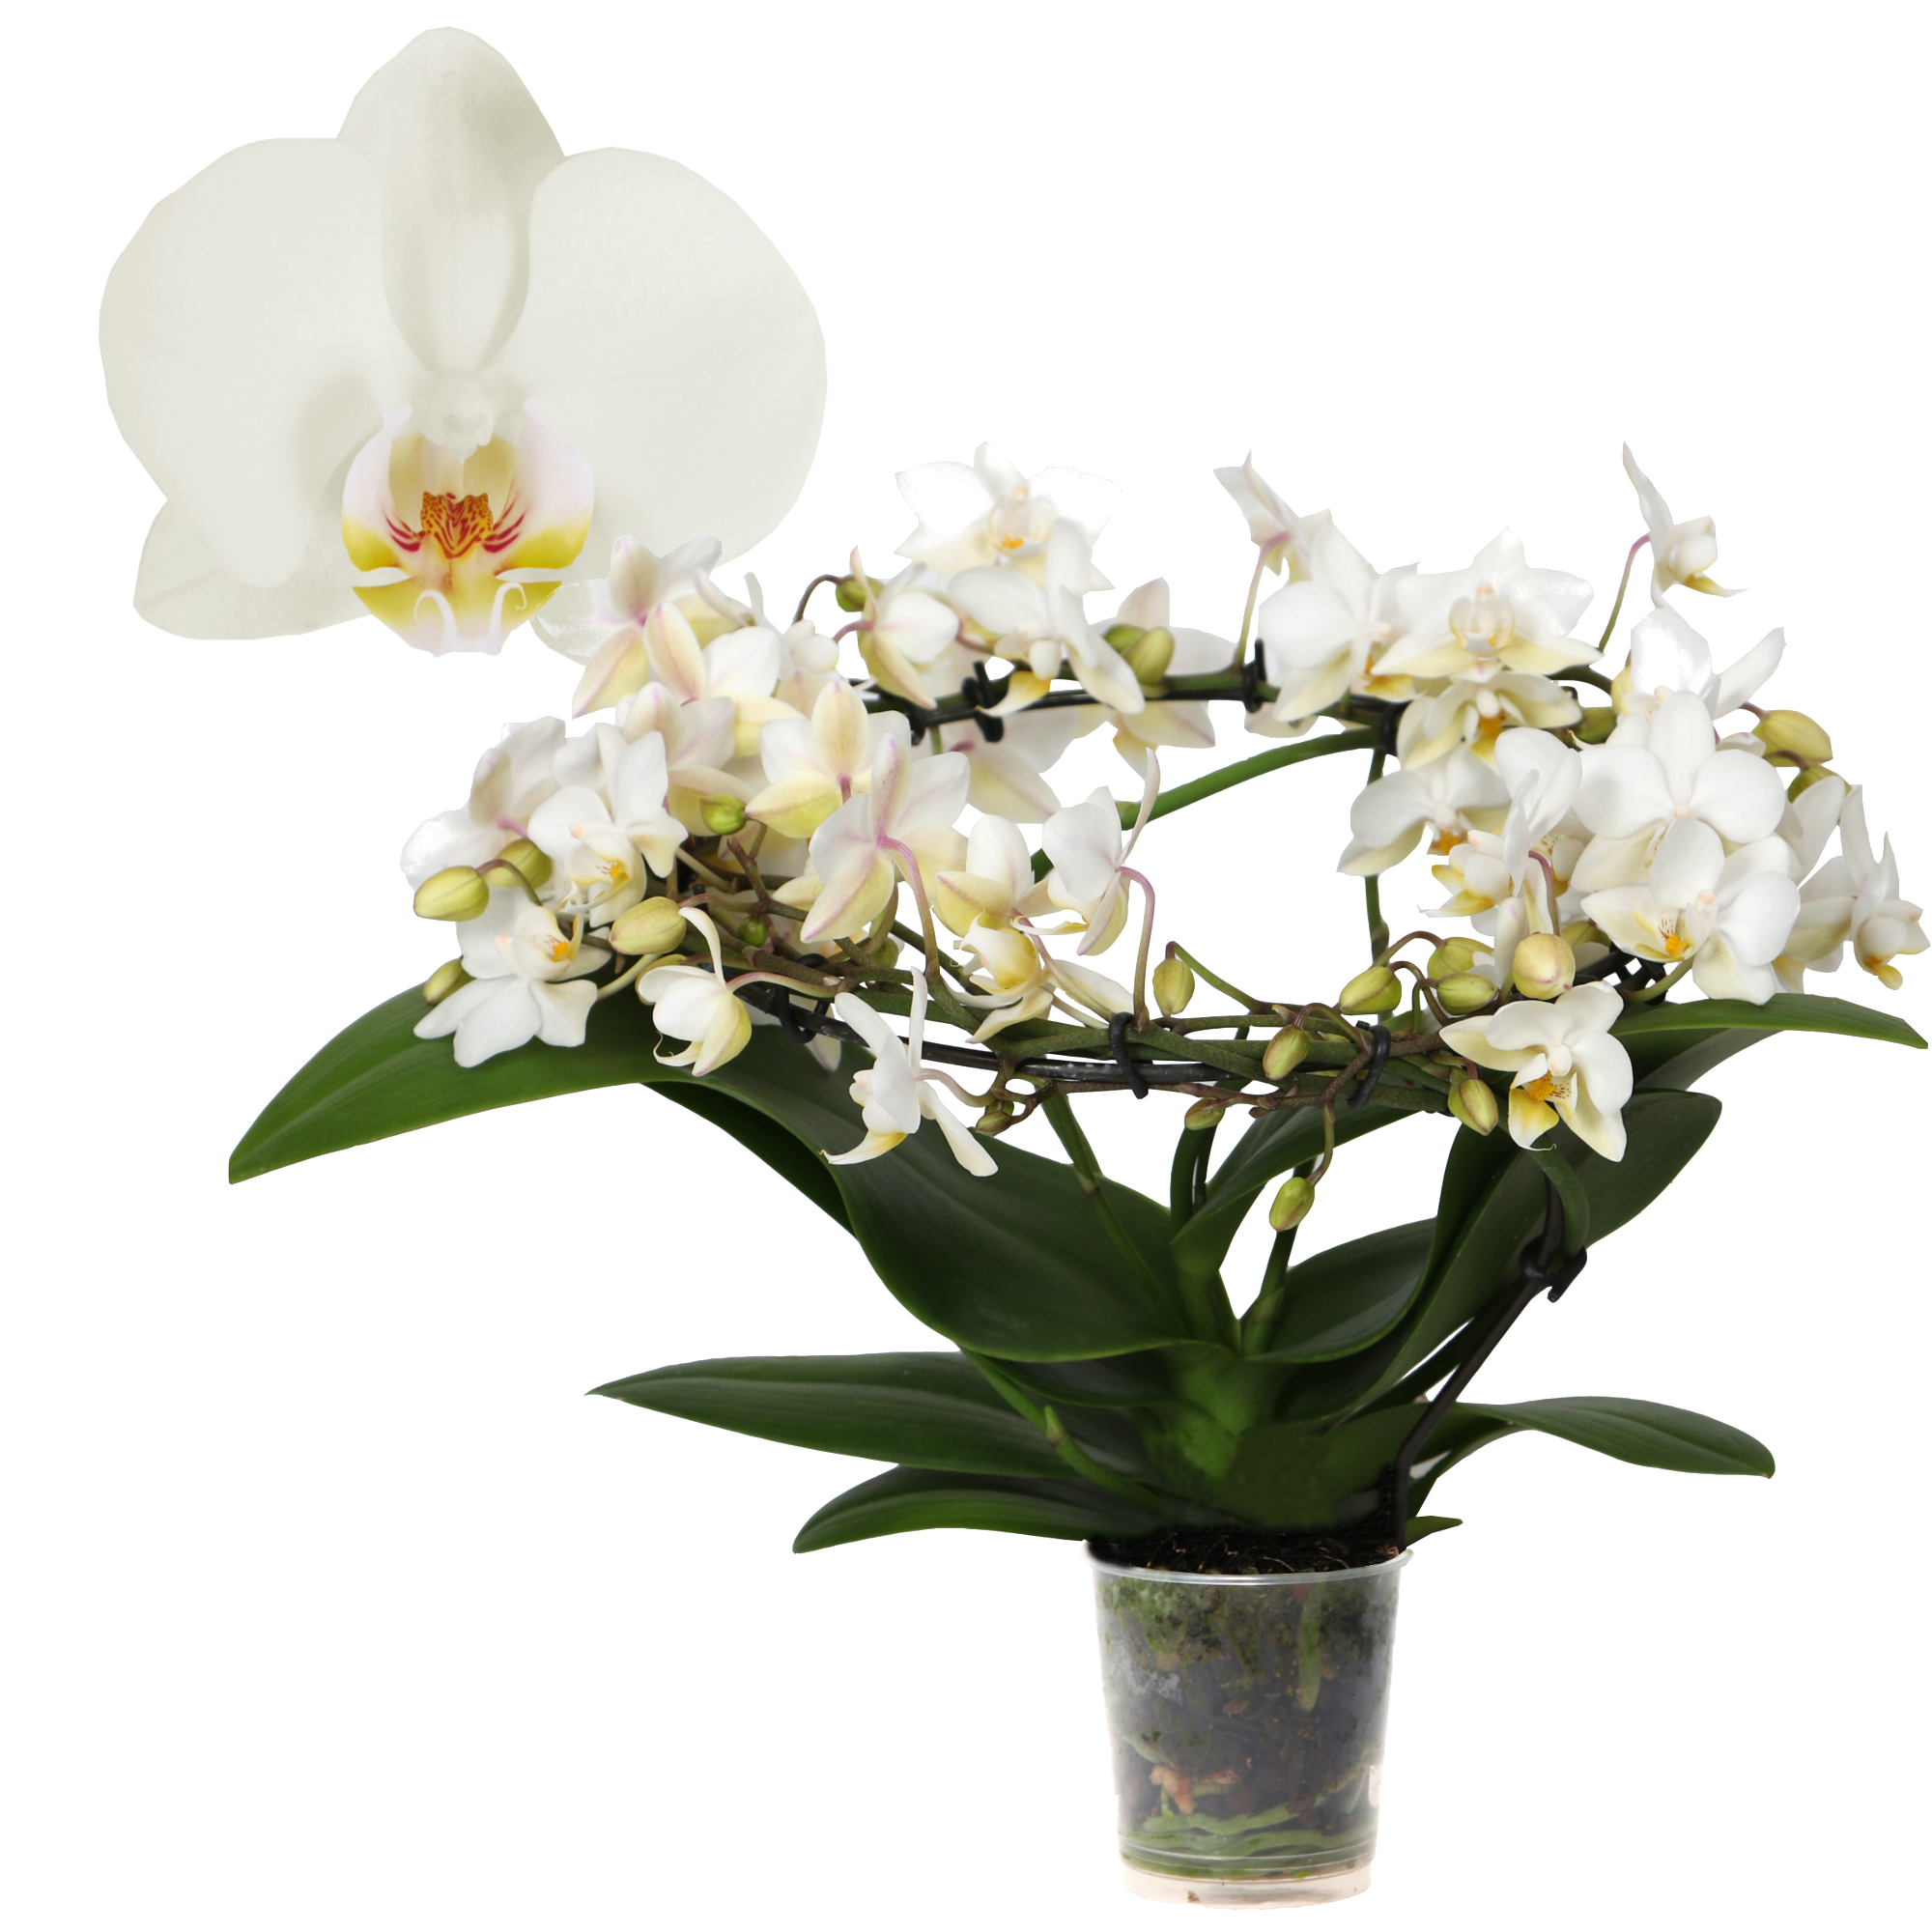 Schmetterlingsorchidee 'Halo' 3 Rispen am Bogen, weiß, 9 cm Topf + product picture